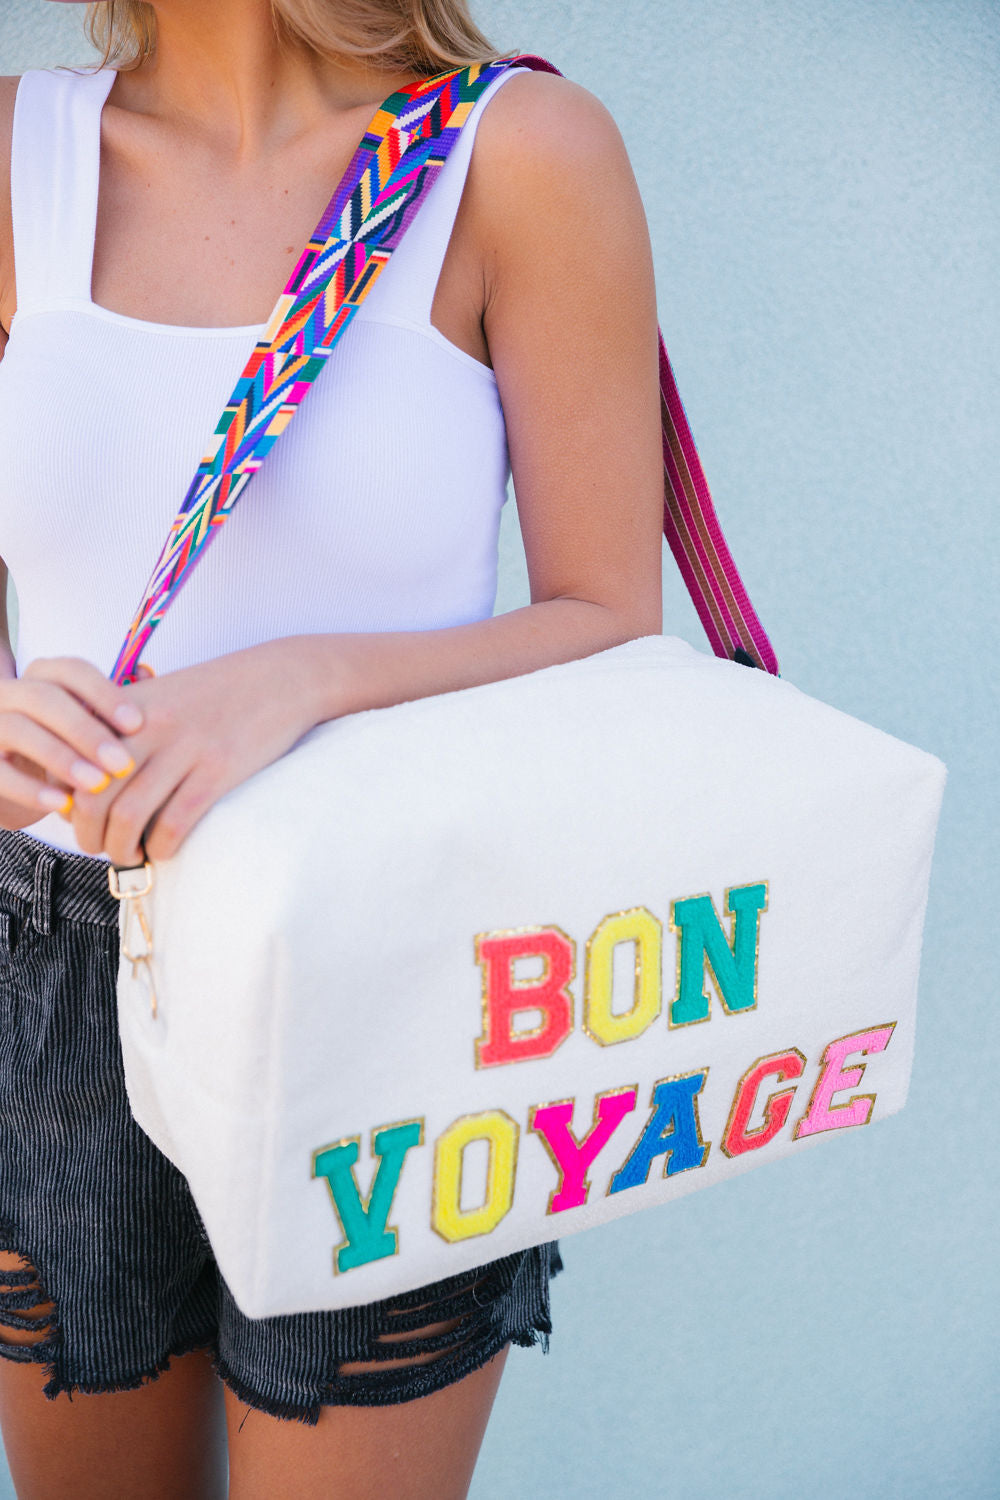 Bon Voyage – Vintage Boho Bags